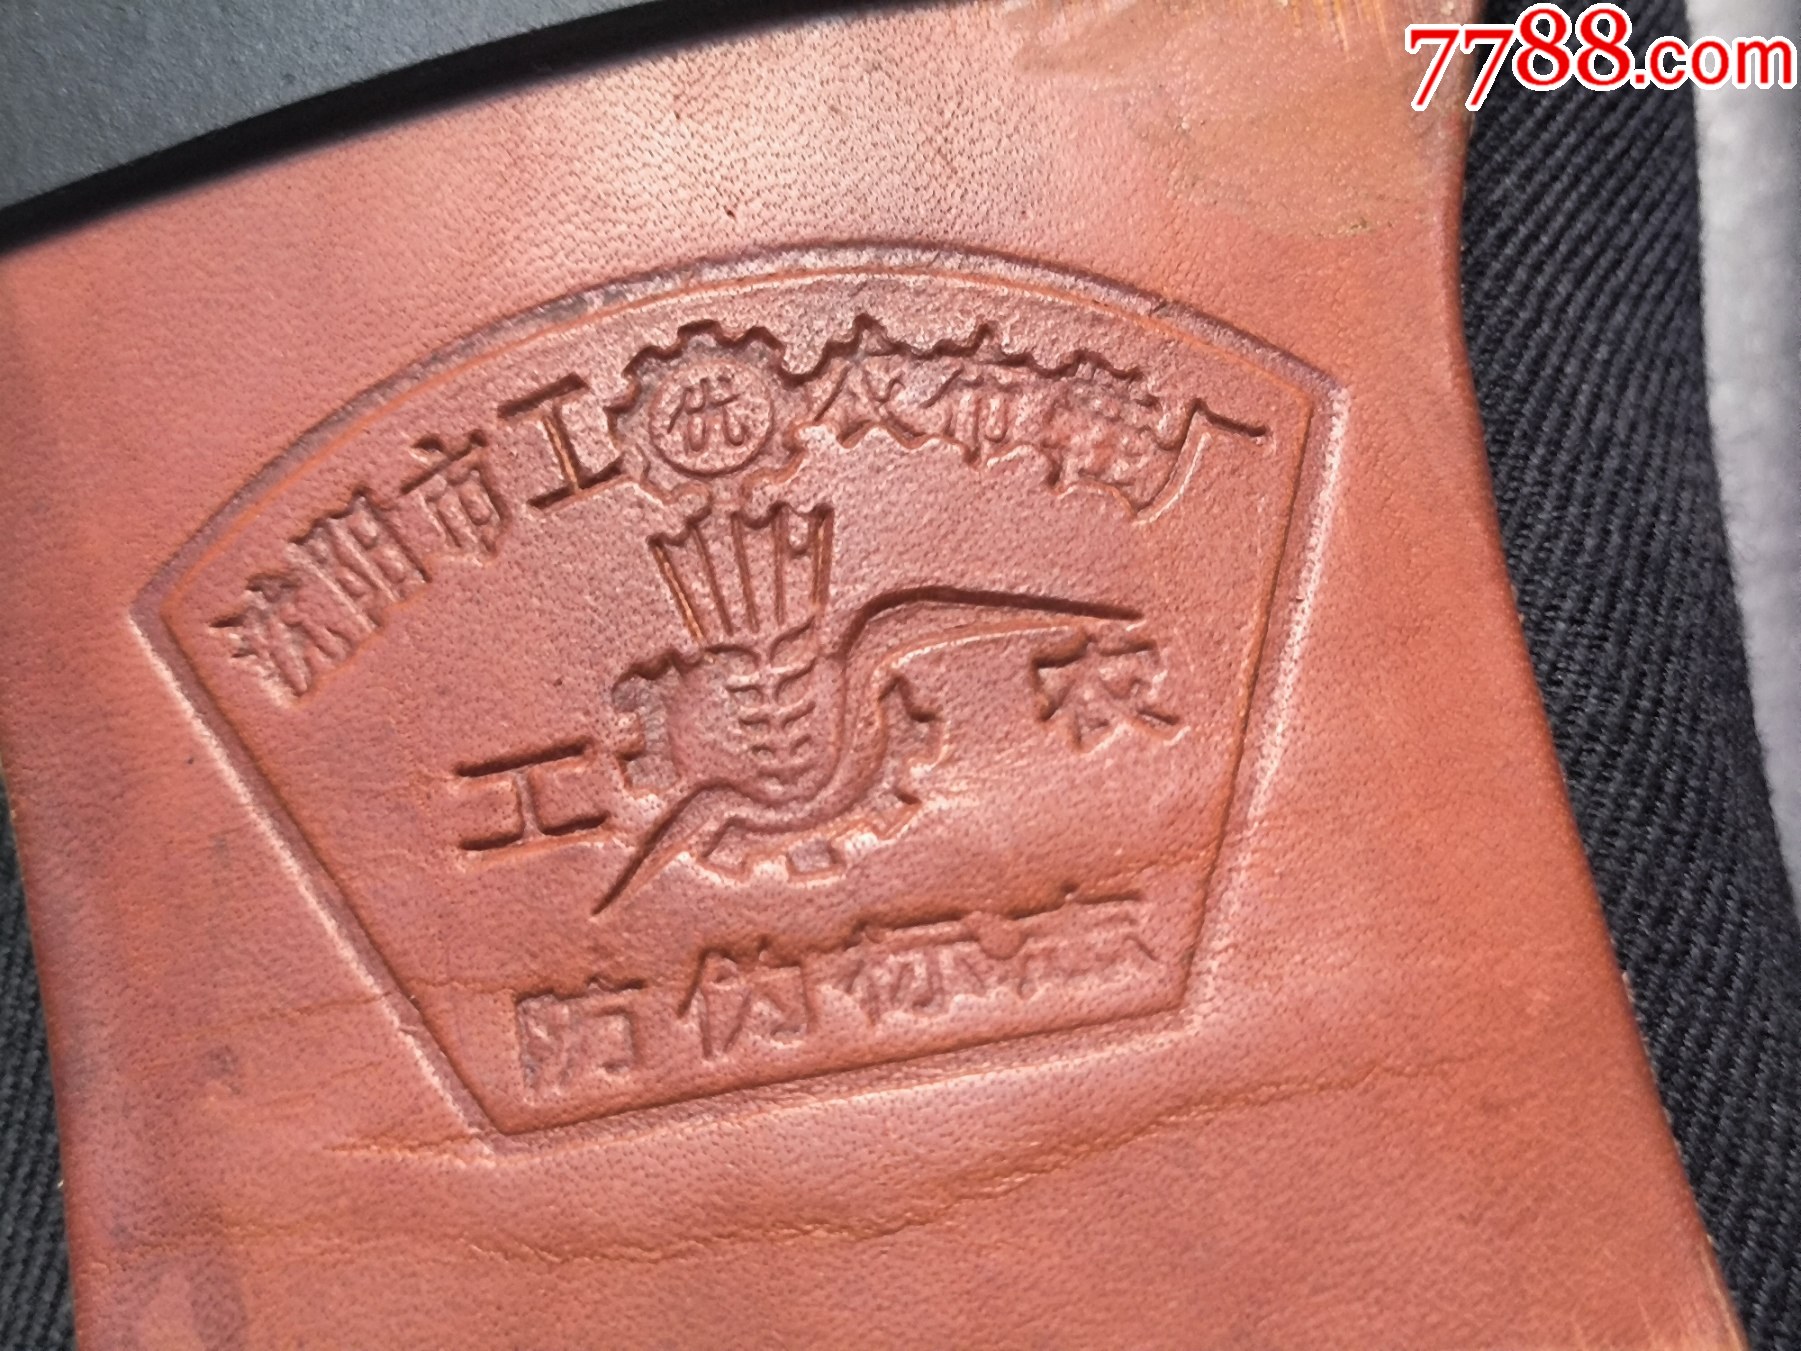 沈阳市工农布鞋厂生产的工农牌鞋m777全新品40码左右纯皮底品相如图